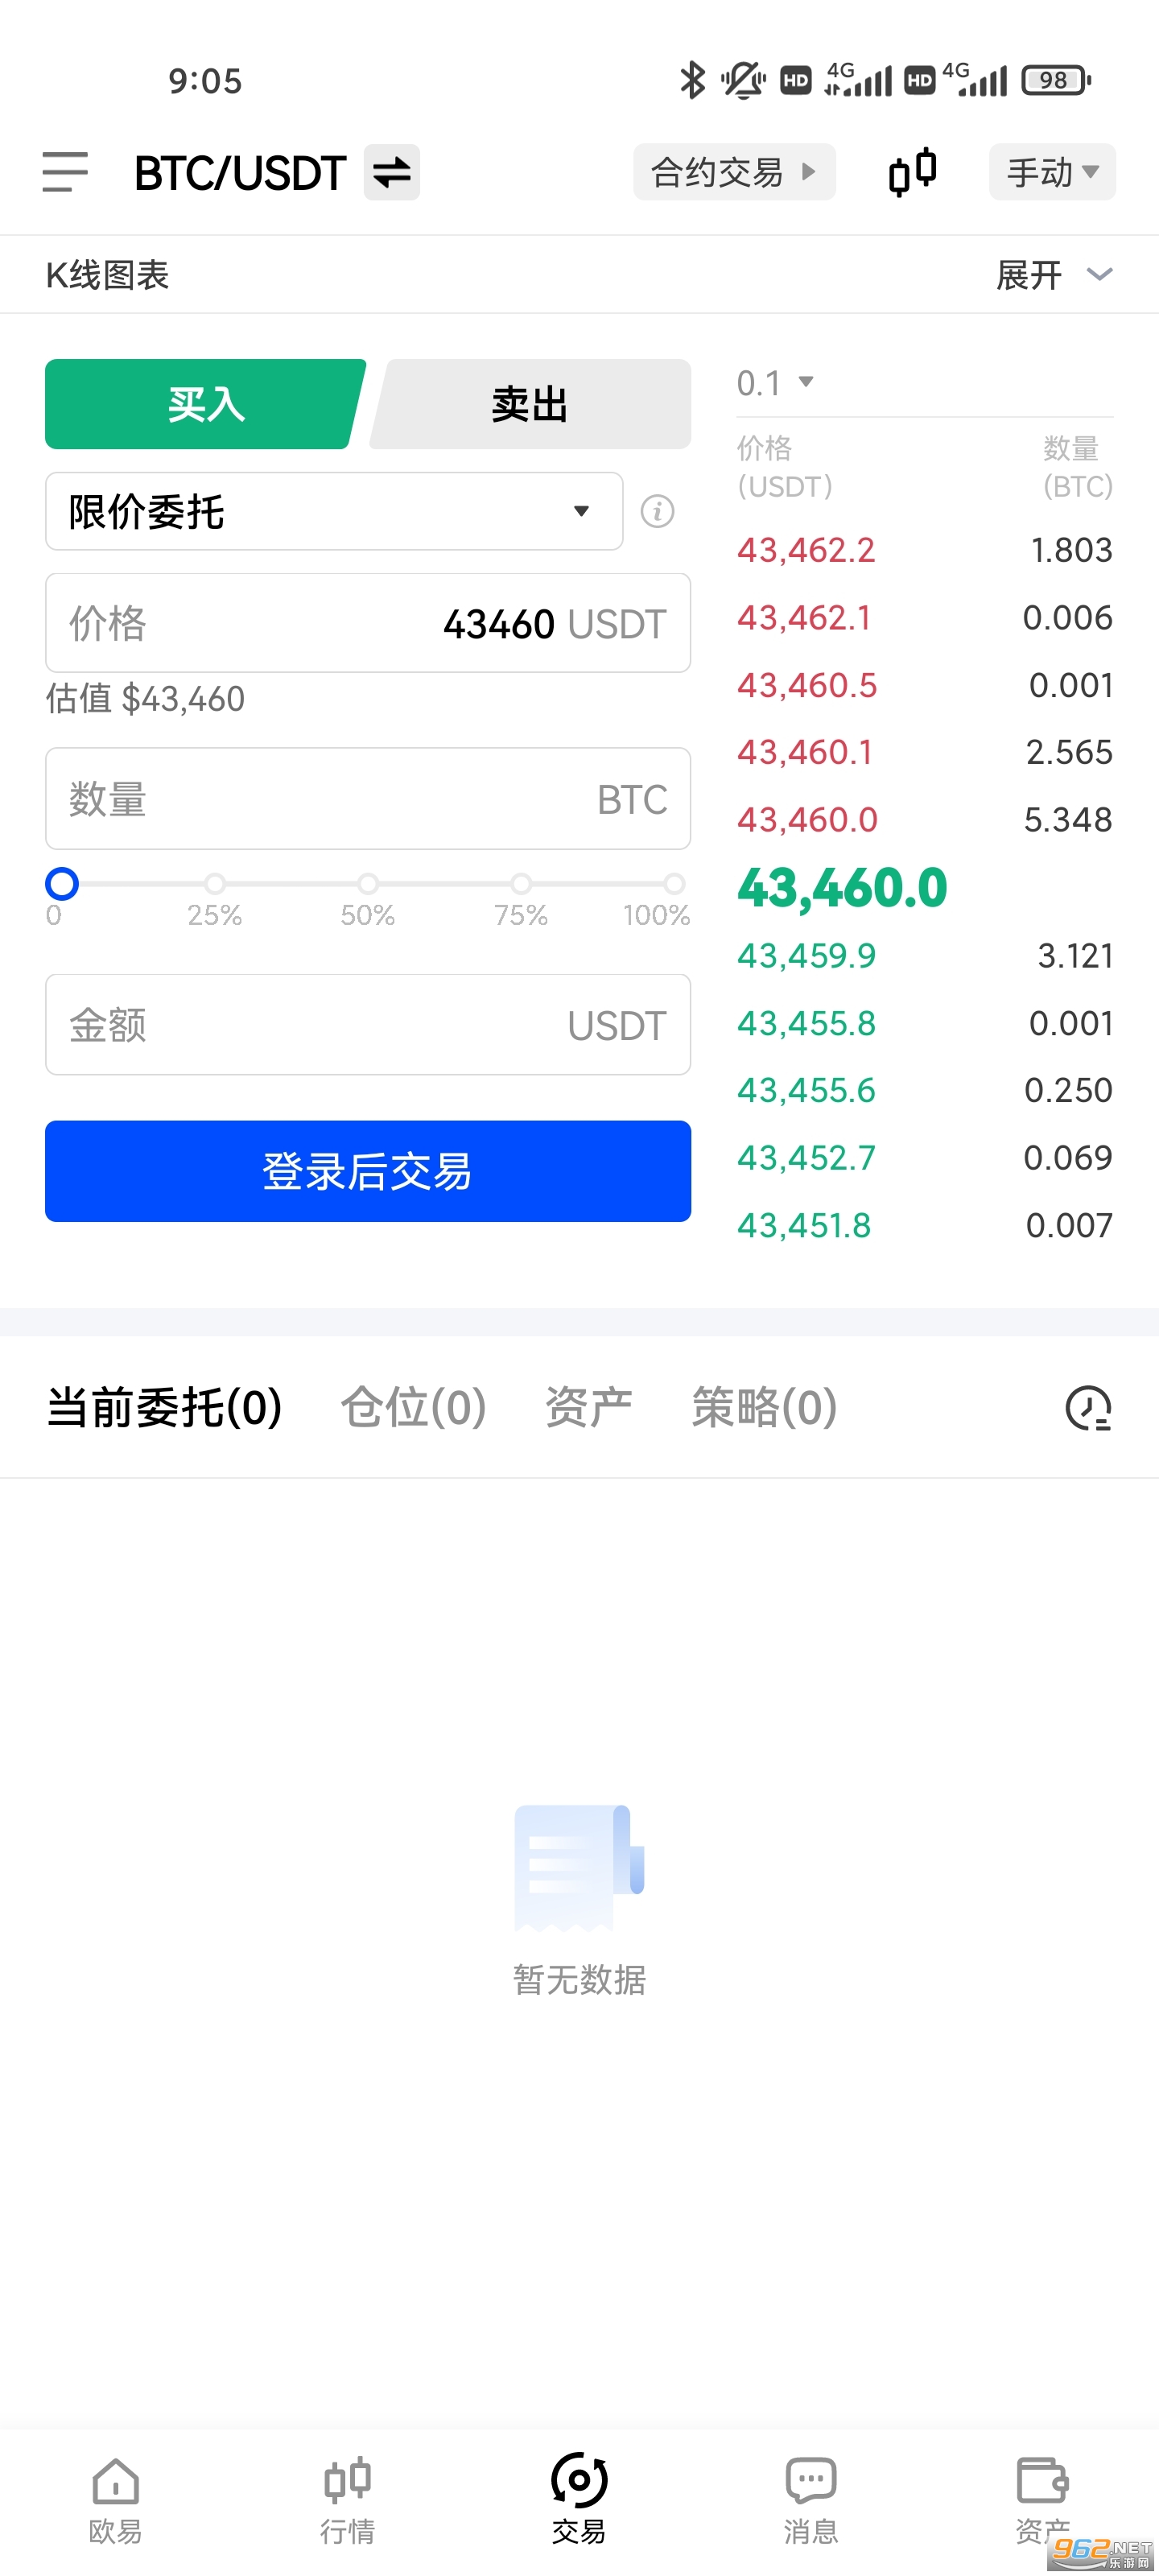 欧易交易所app官方版 v6.0.22 (okx.com)